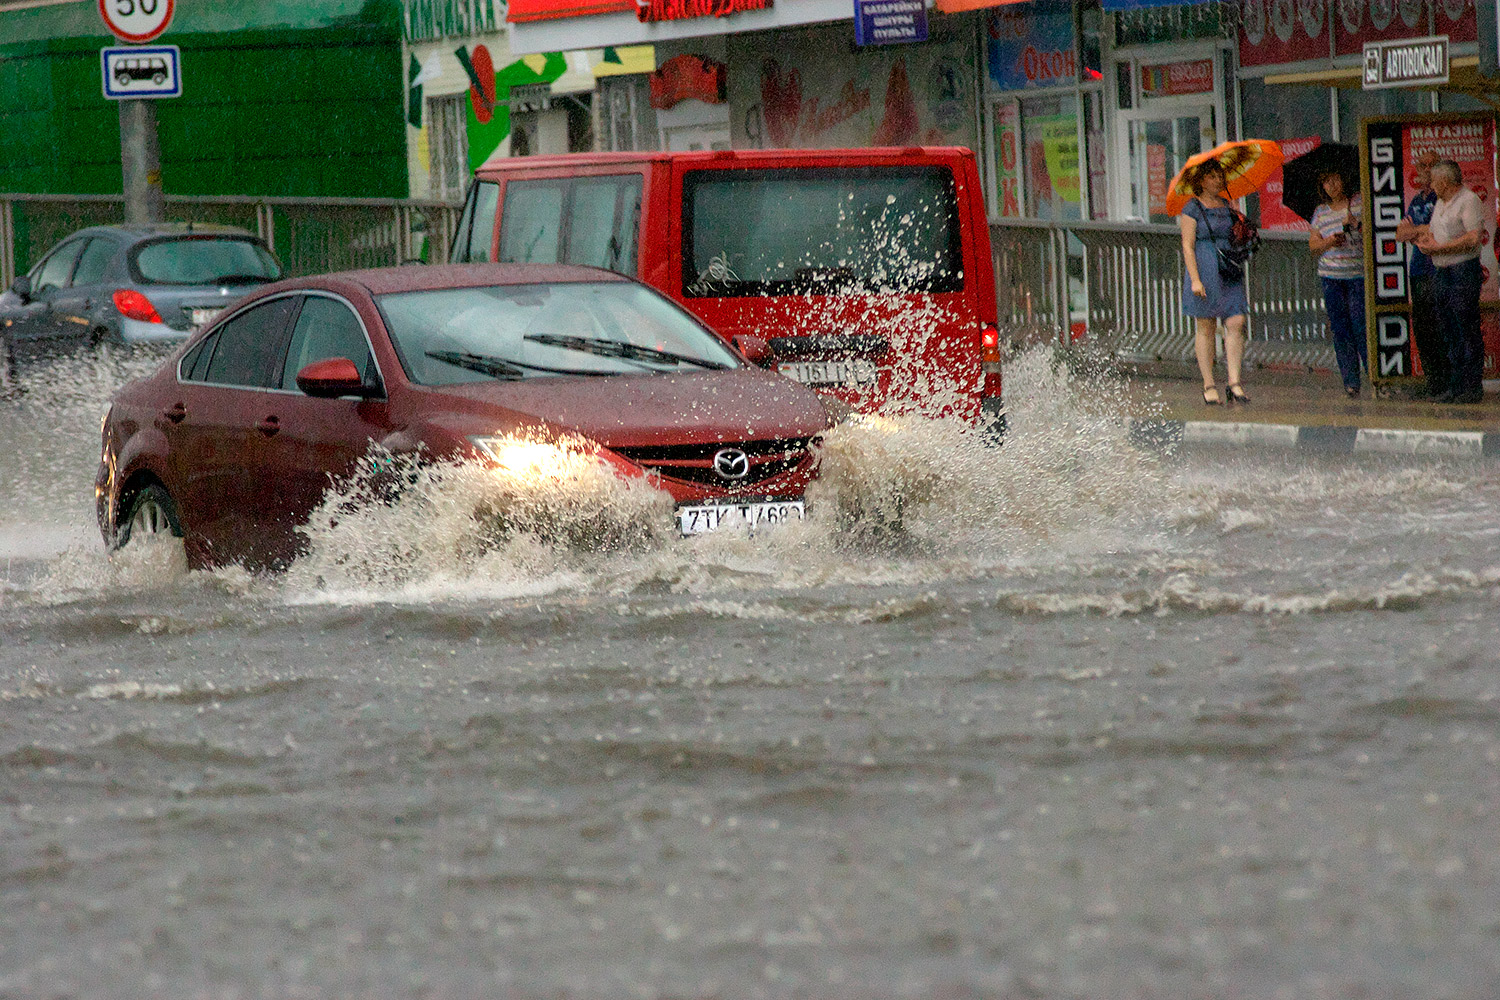 После сильной жары на Витебск обрушился тропический шторм, в городе сразу выпало 43% от месячной нормы осадков. Фото Сергея Серебро